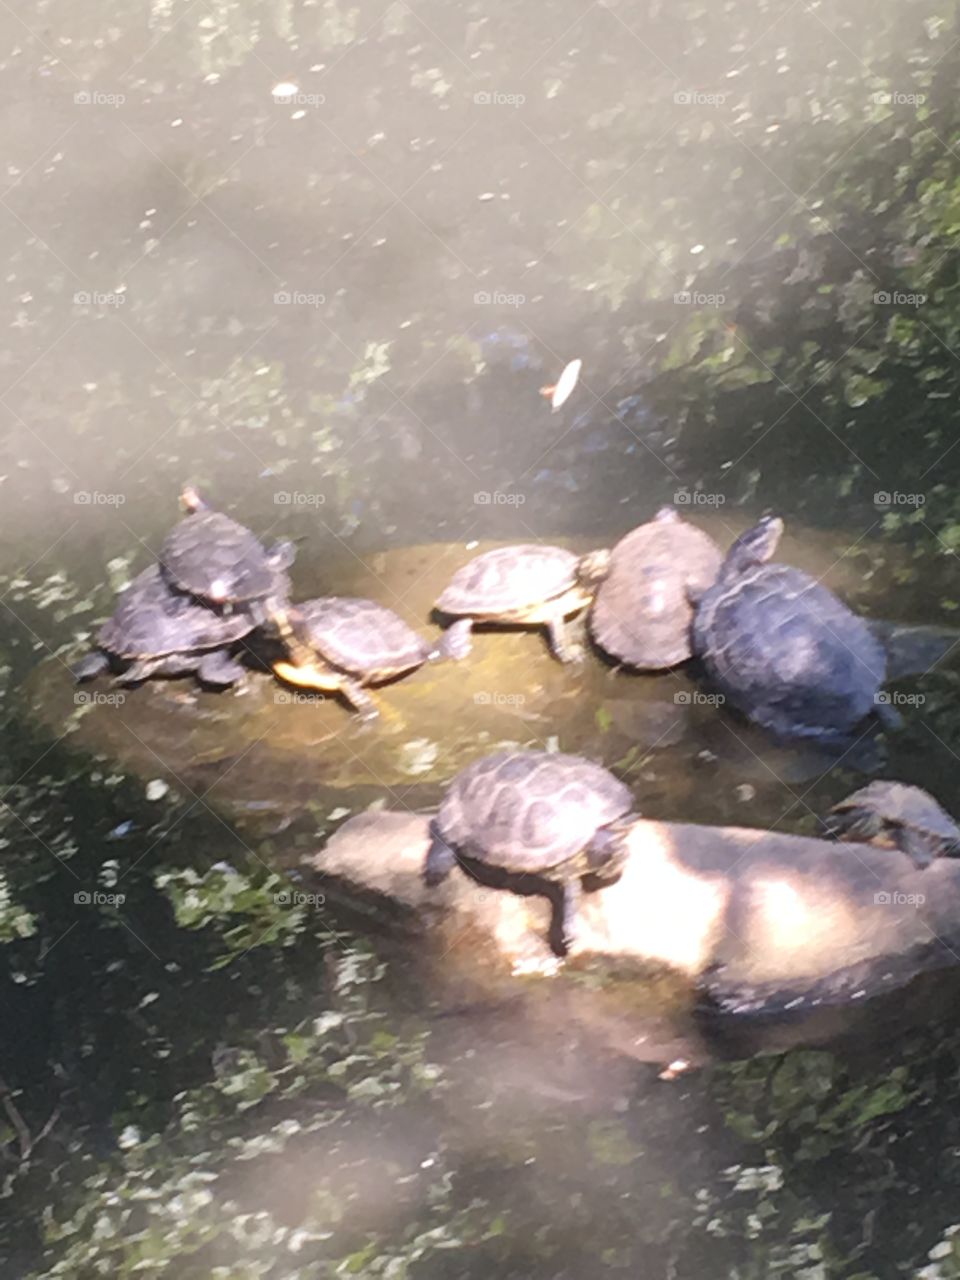 Turtles 